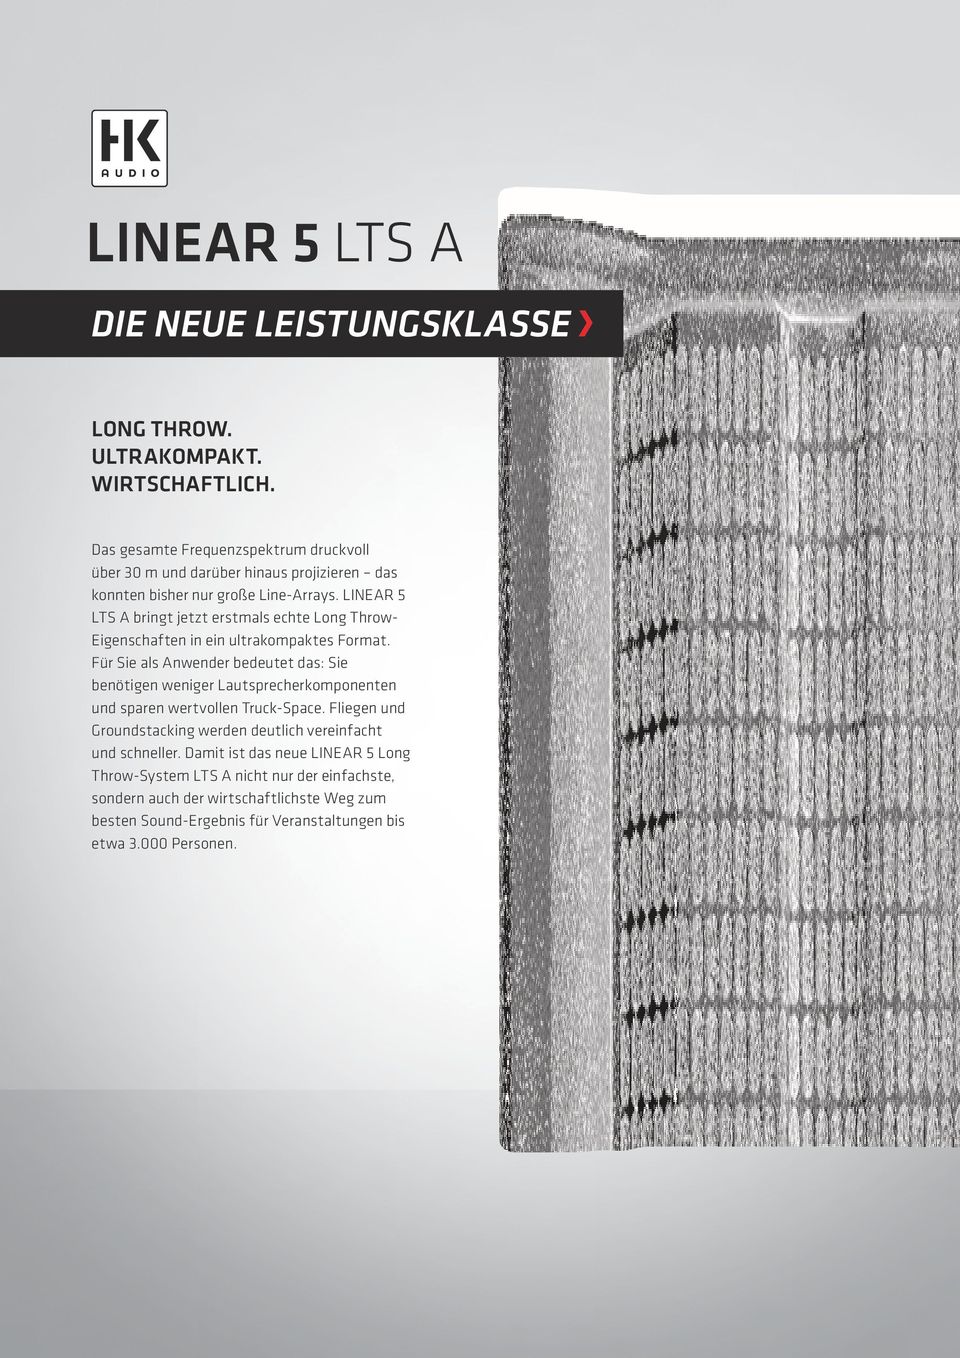 LINEAR 5 LTS A bringt jetzt erstmals echte Long Throw- Eigenschaften in ein ultrakompaktes Format.